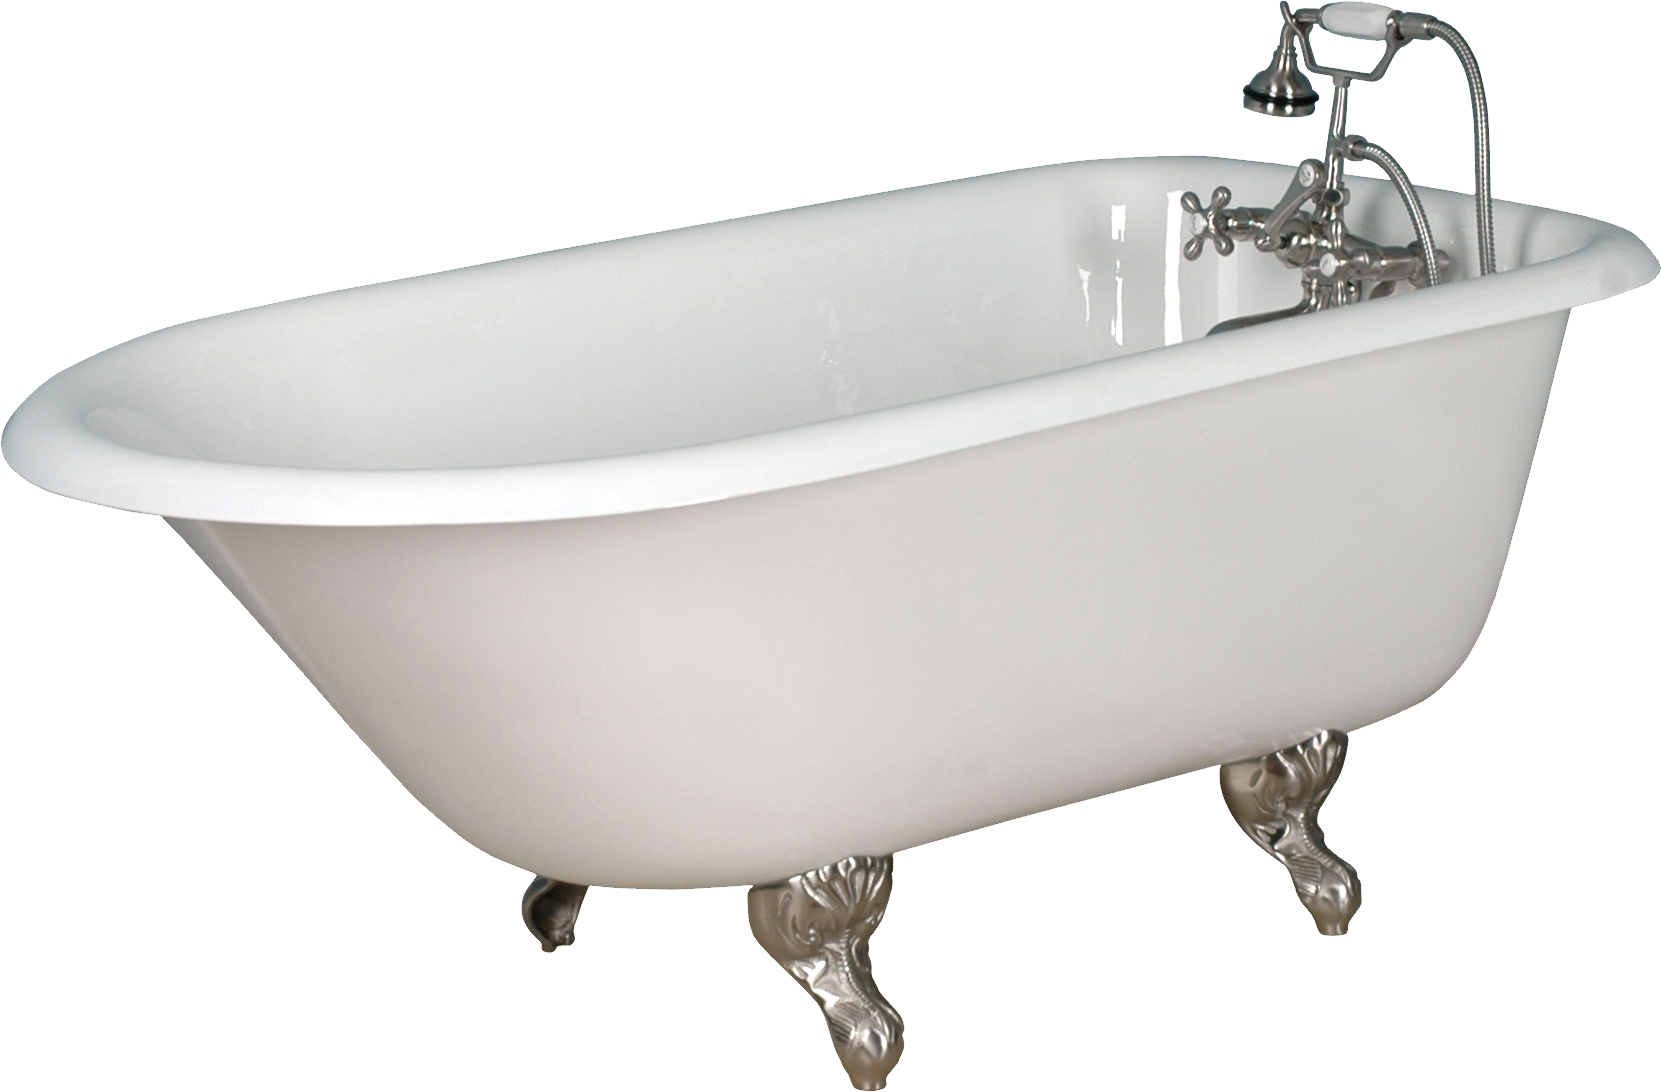 Clipart dog bath tub. Bathtub png 